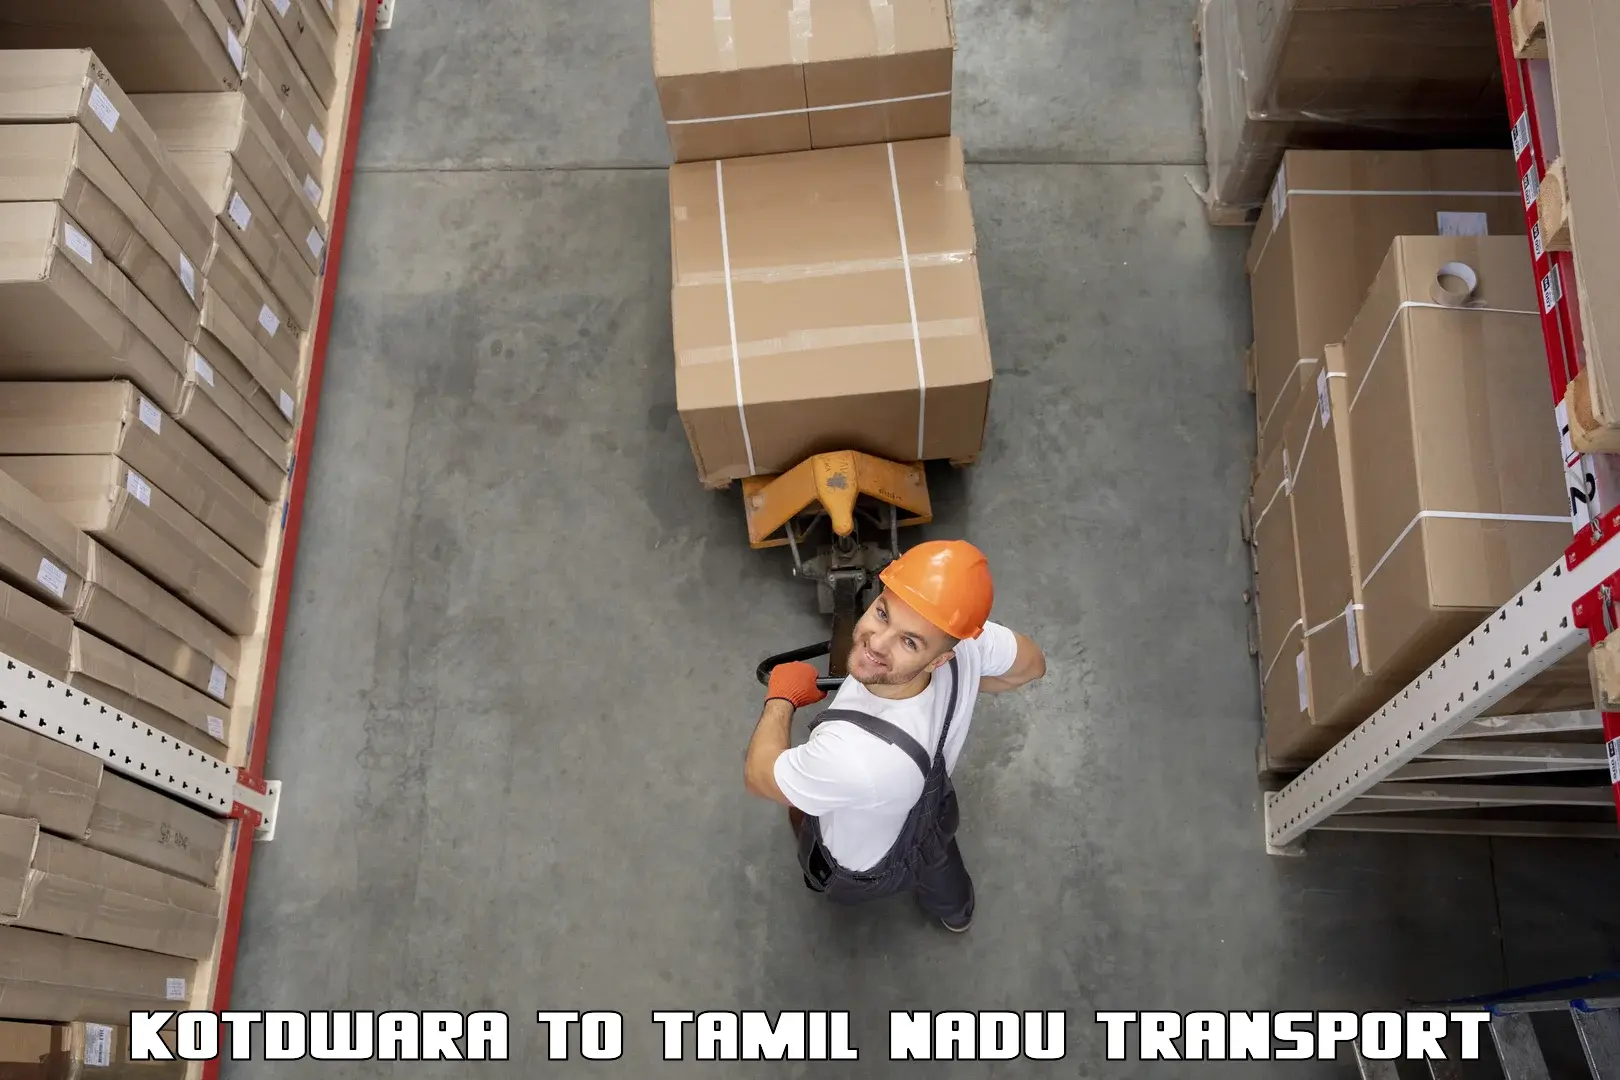 Lorry transport service Kotdwara to Suramangalam